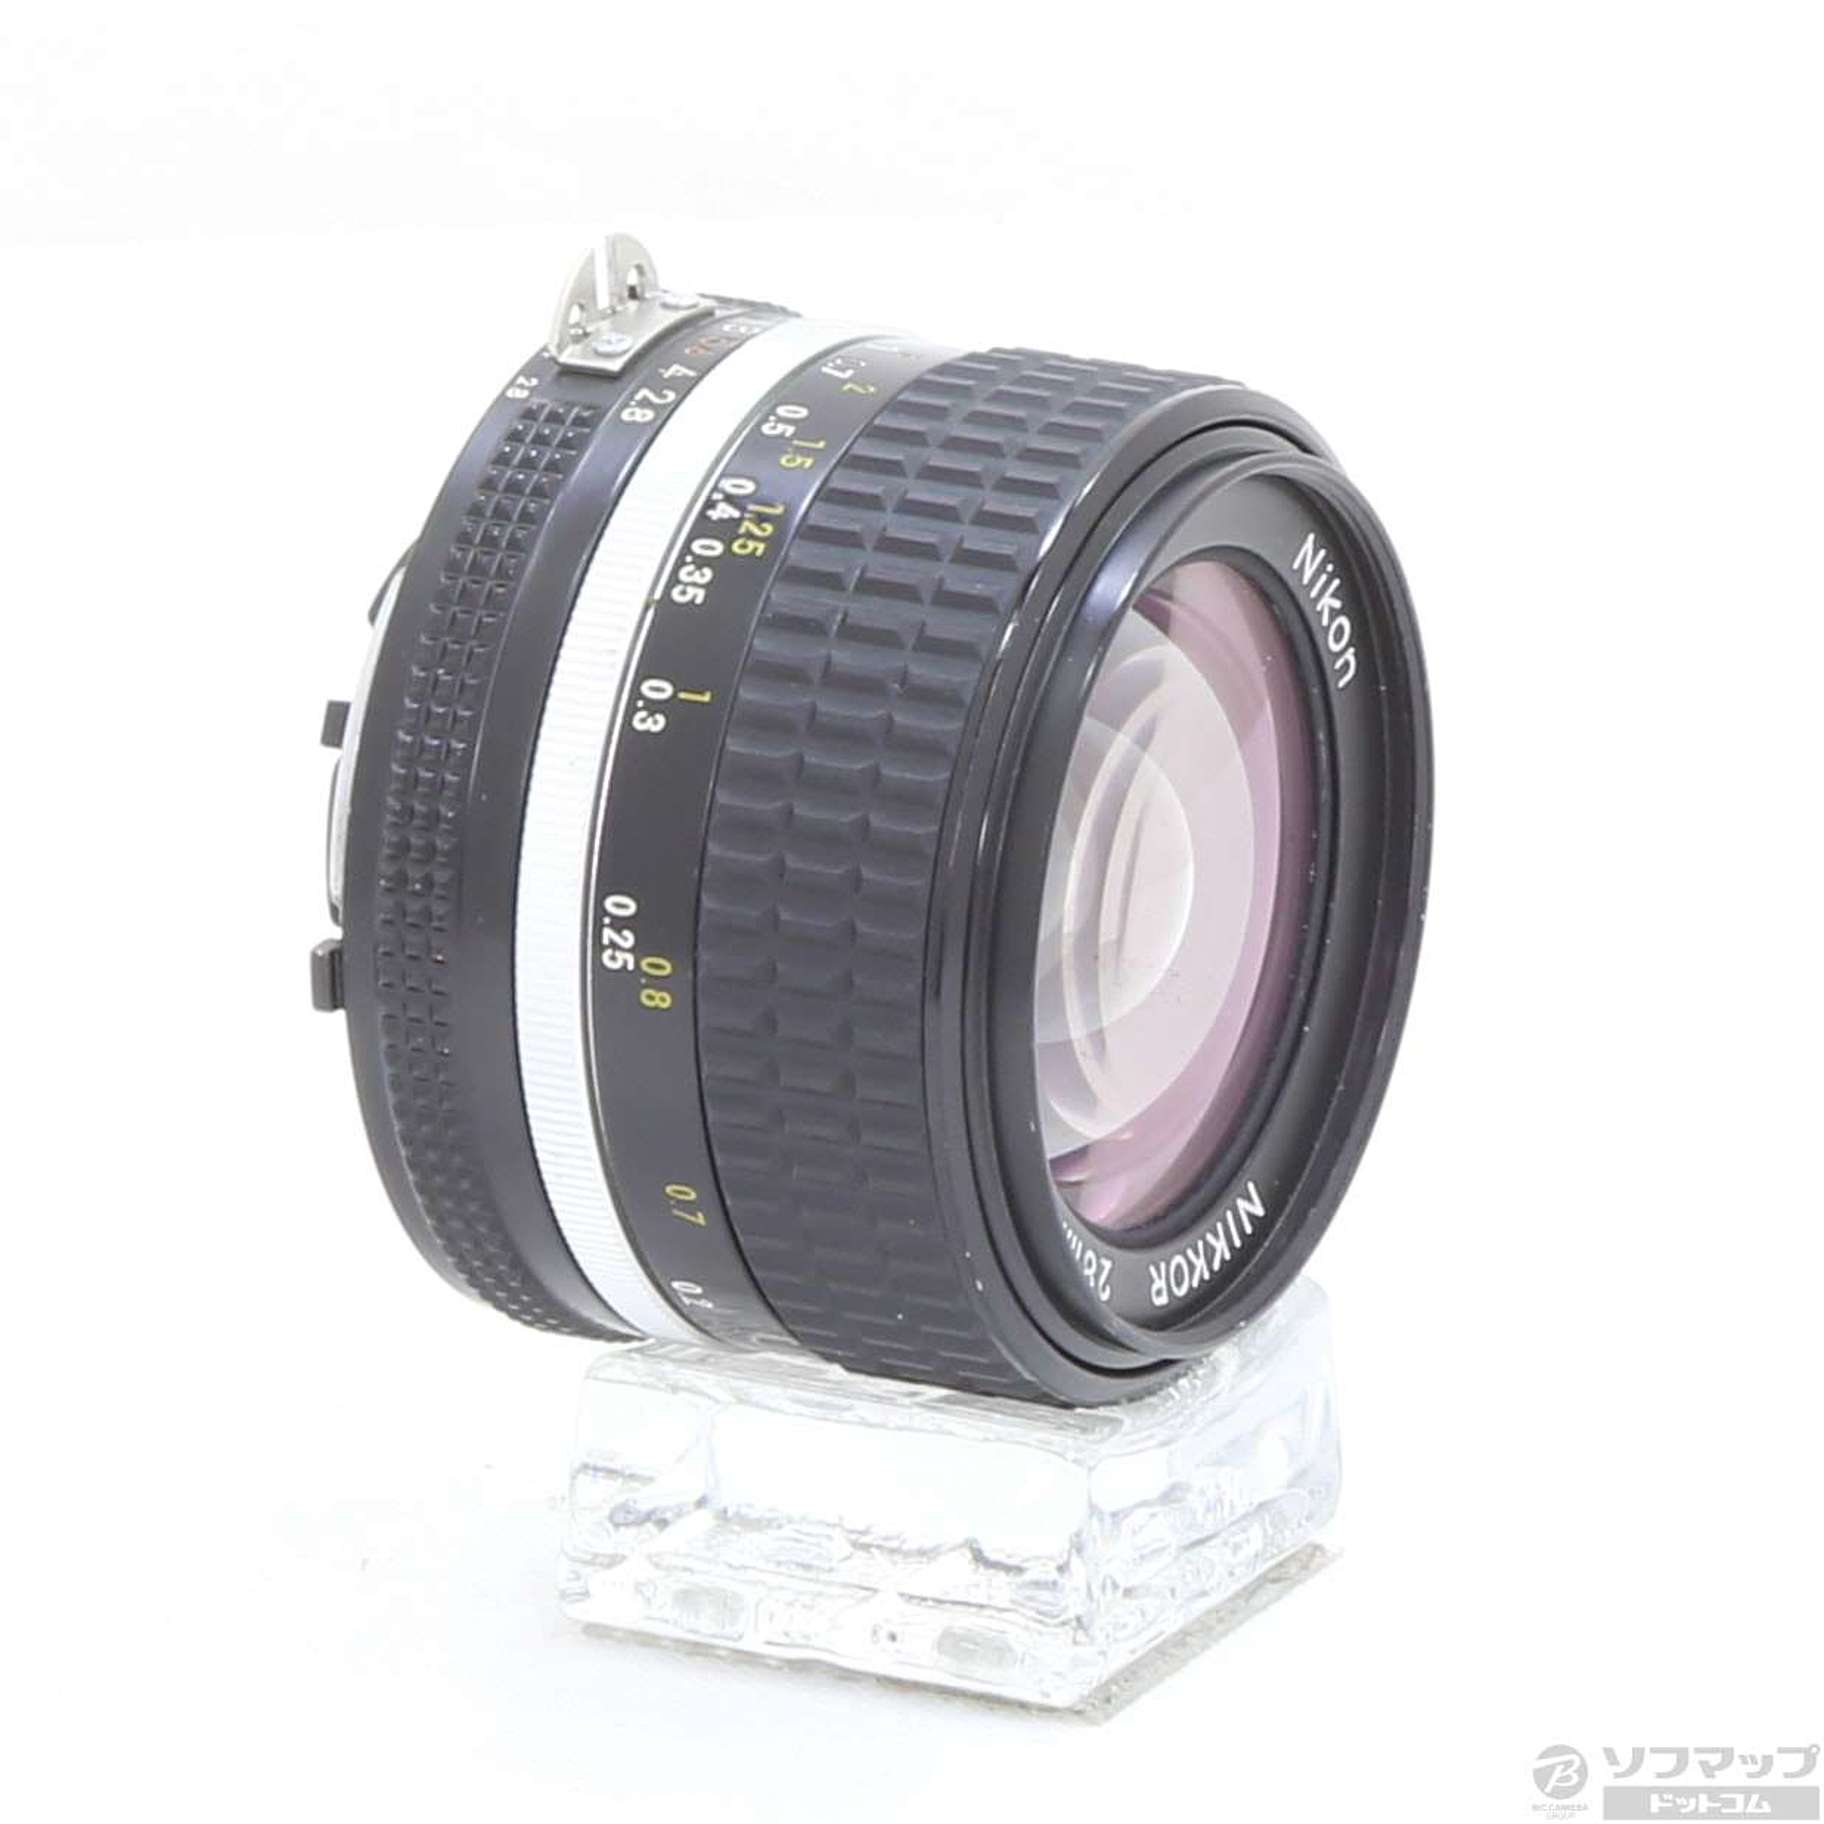 中古】Nikon Ai Nikkor 28mm F2.8S (マニュアルフォーカスレンズ) ◇05 